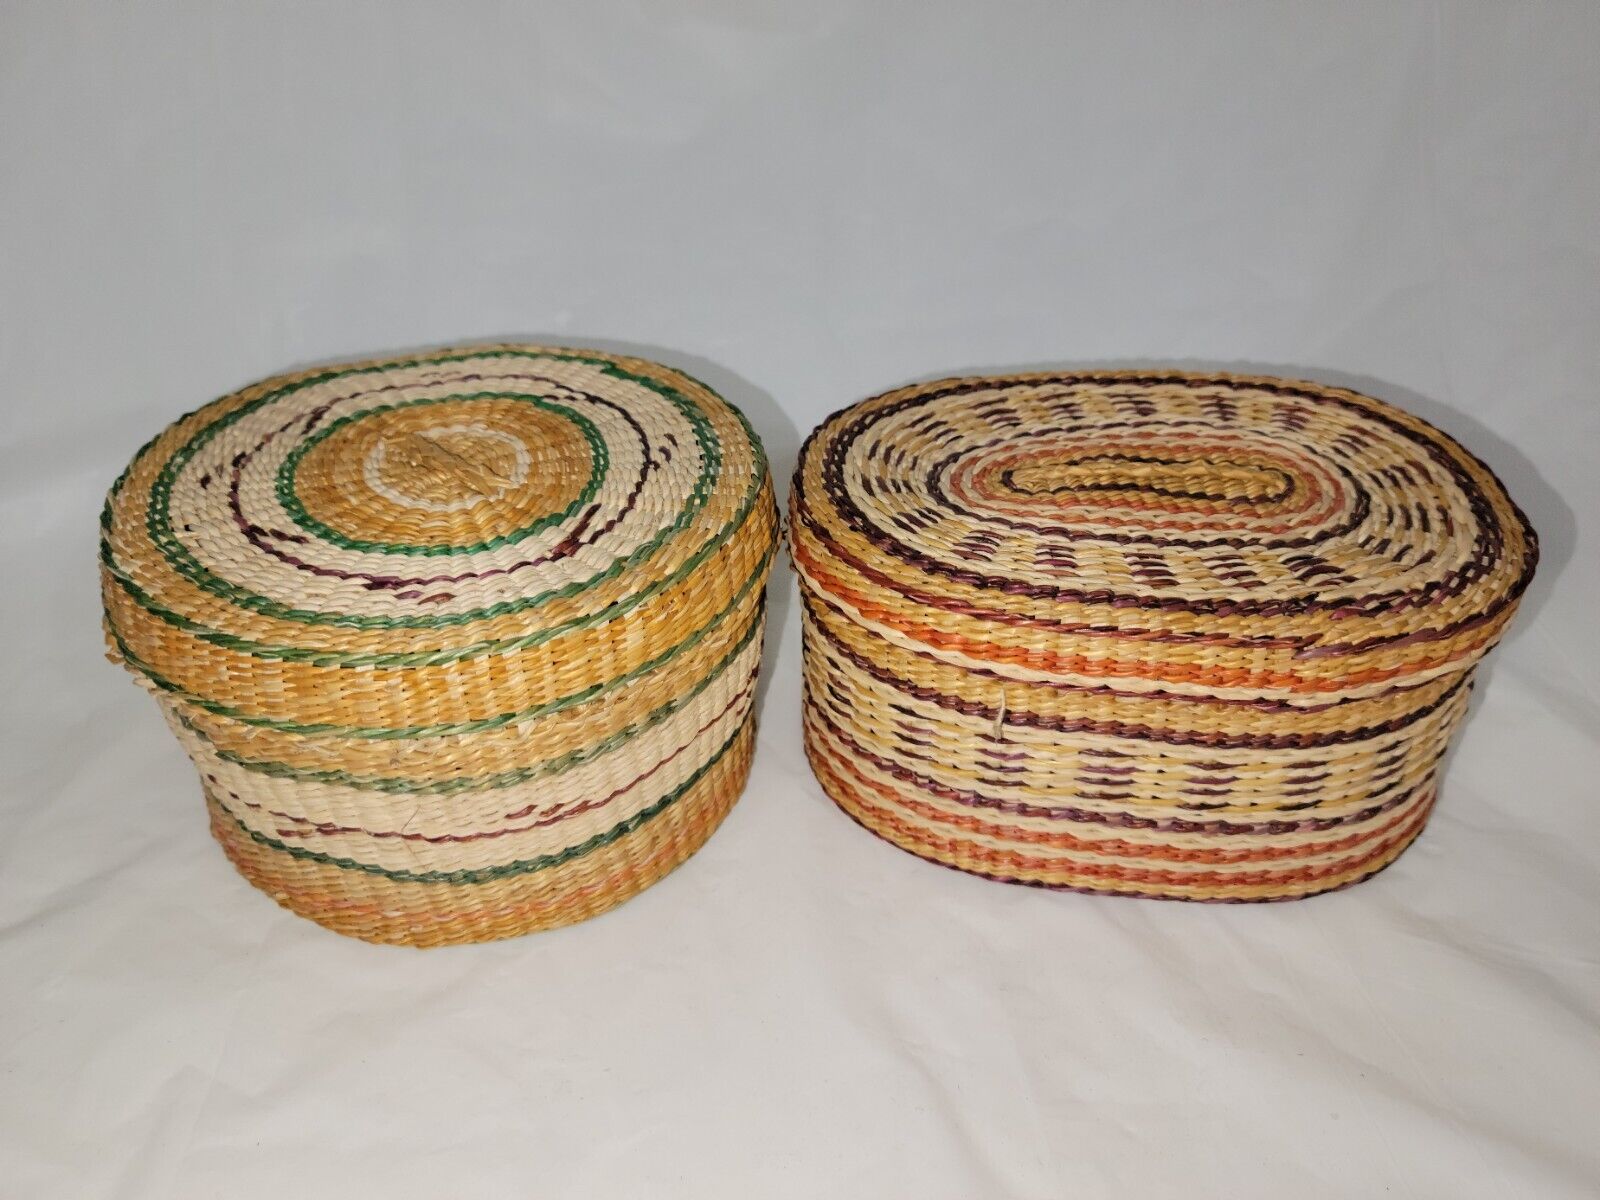 Vintage Grass Handmade Lidded Baskets / Woven Seagrass Baskets Pair 